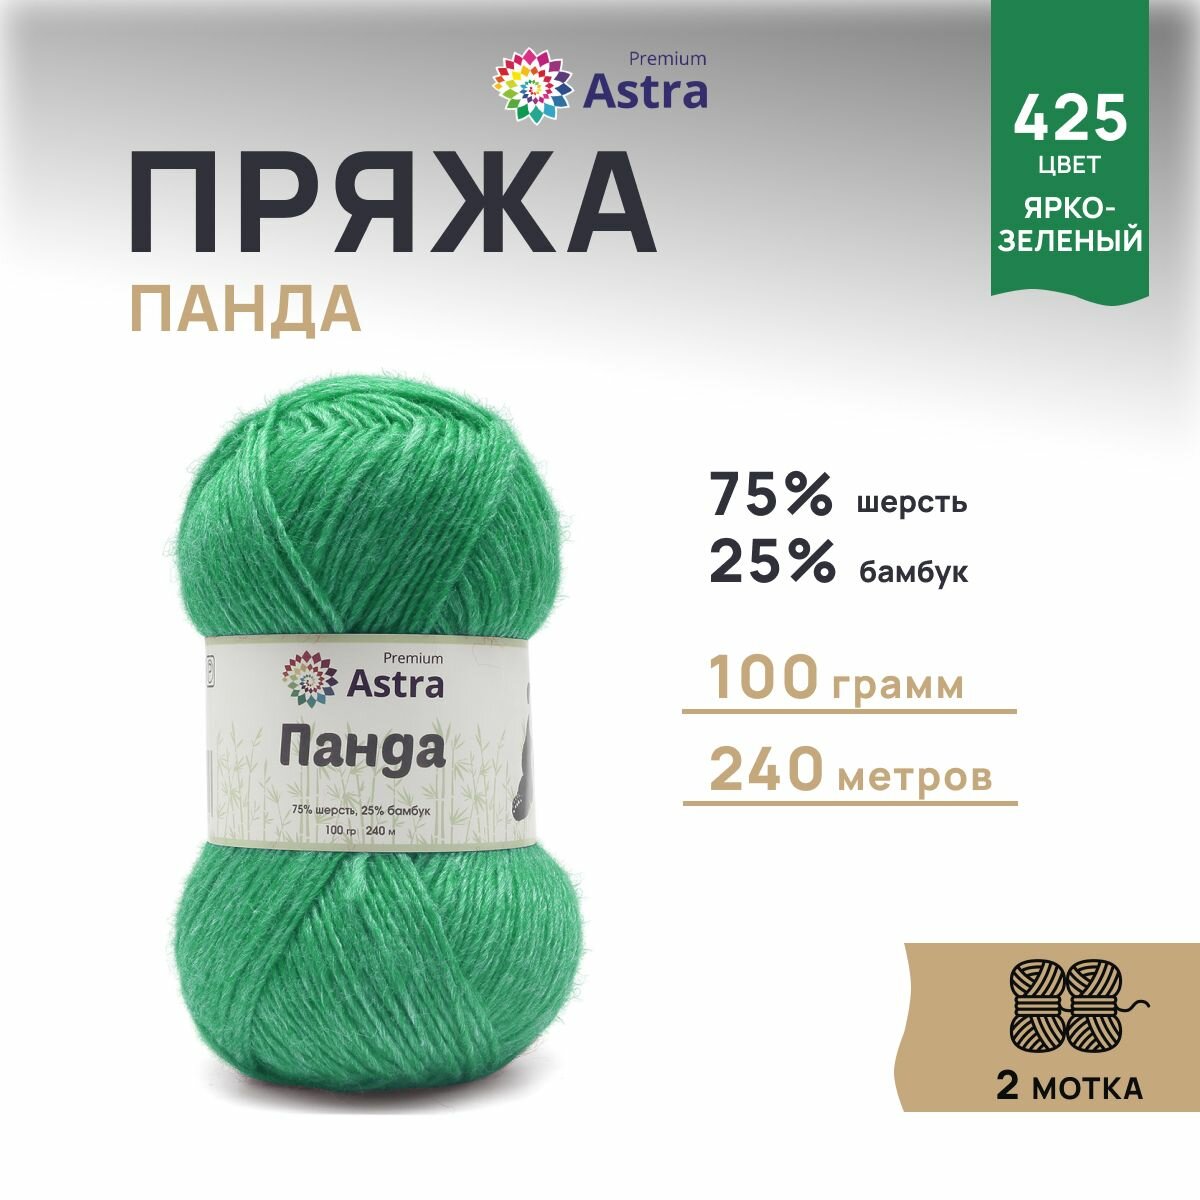 Пряжа для вязания Astra Premium 'Панда' (Panda) 100г, 240м (75% шерсть, 25% бамбук) (425 ярко-зеленый), 2 мотка